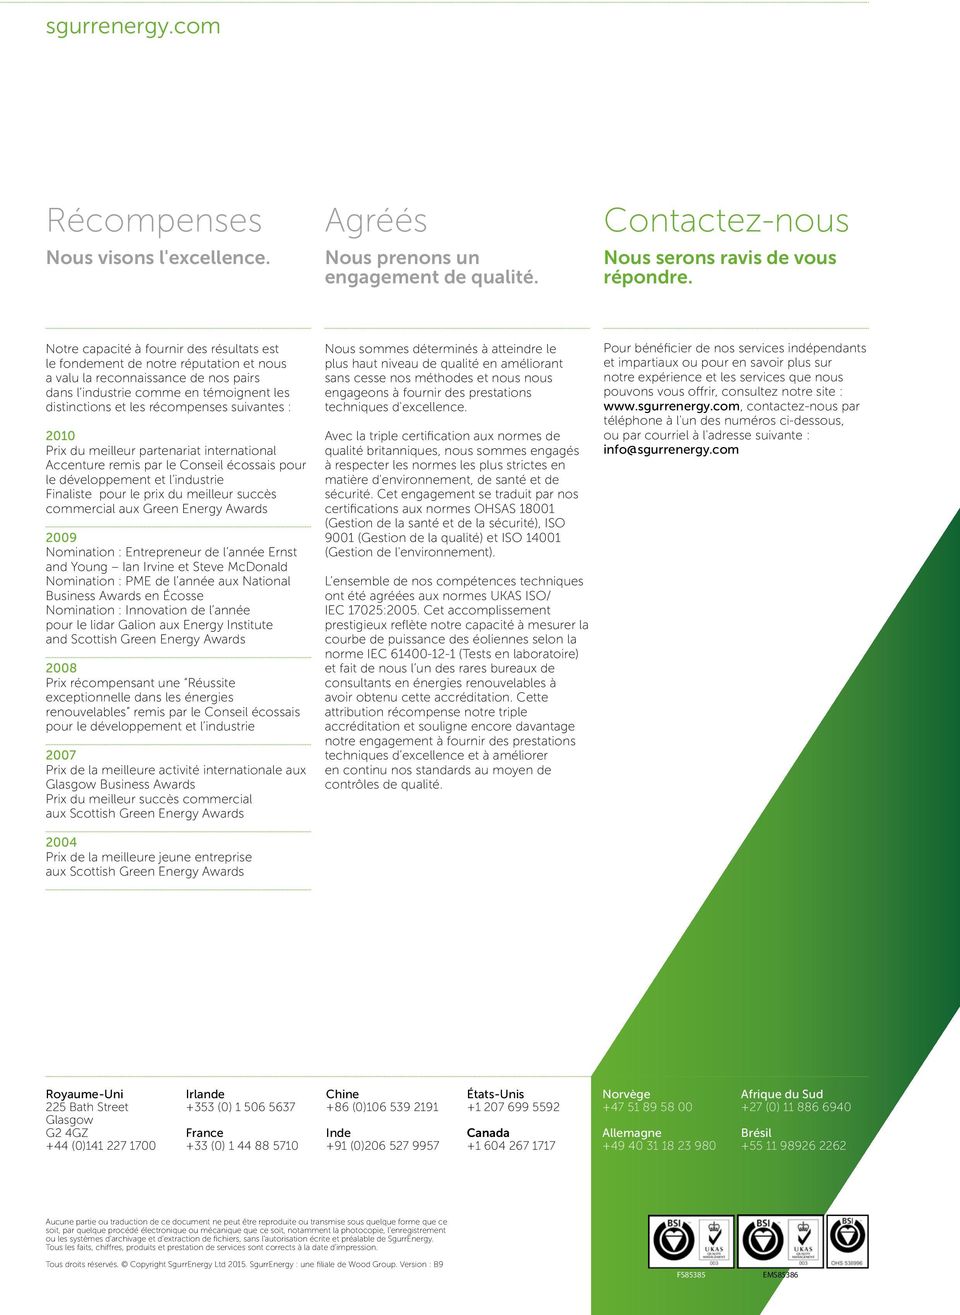 suivantes : 2010 Prix du meilleur partenariat international Accenture remis par le Conseil écossais pour le développement et l industrie Finaliste pour le prix du meilleur succès commercial aux Green